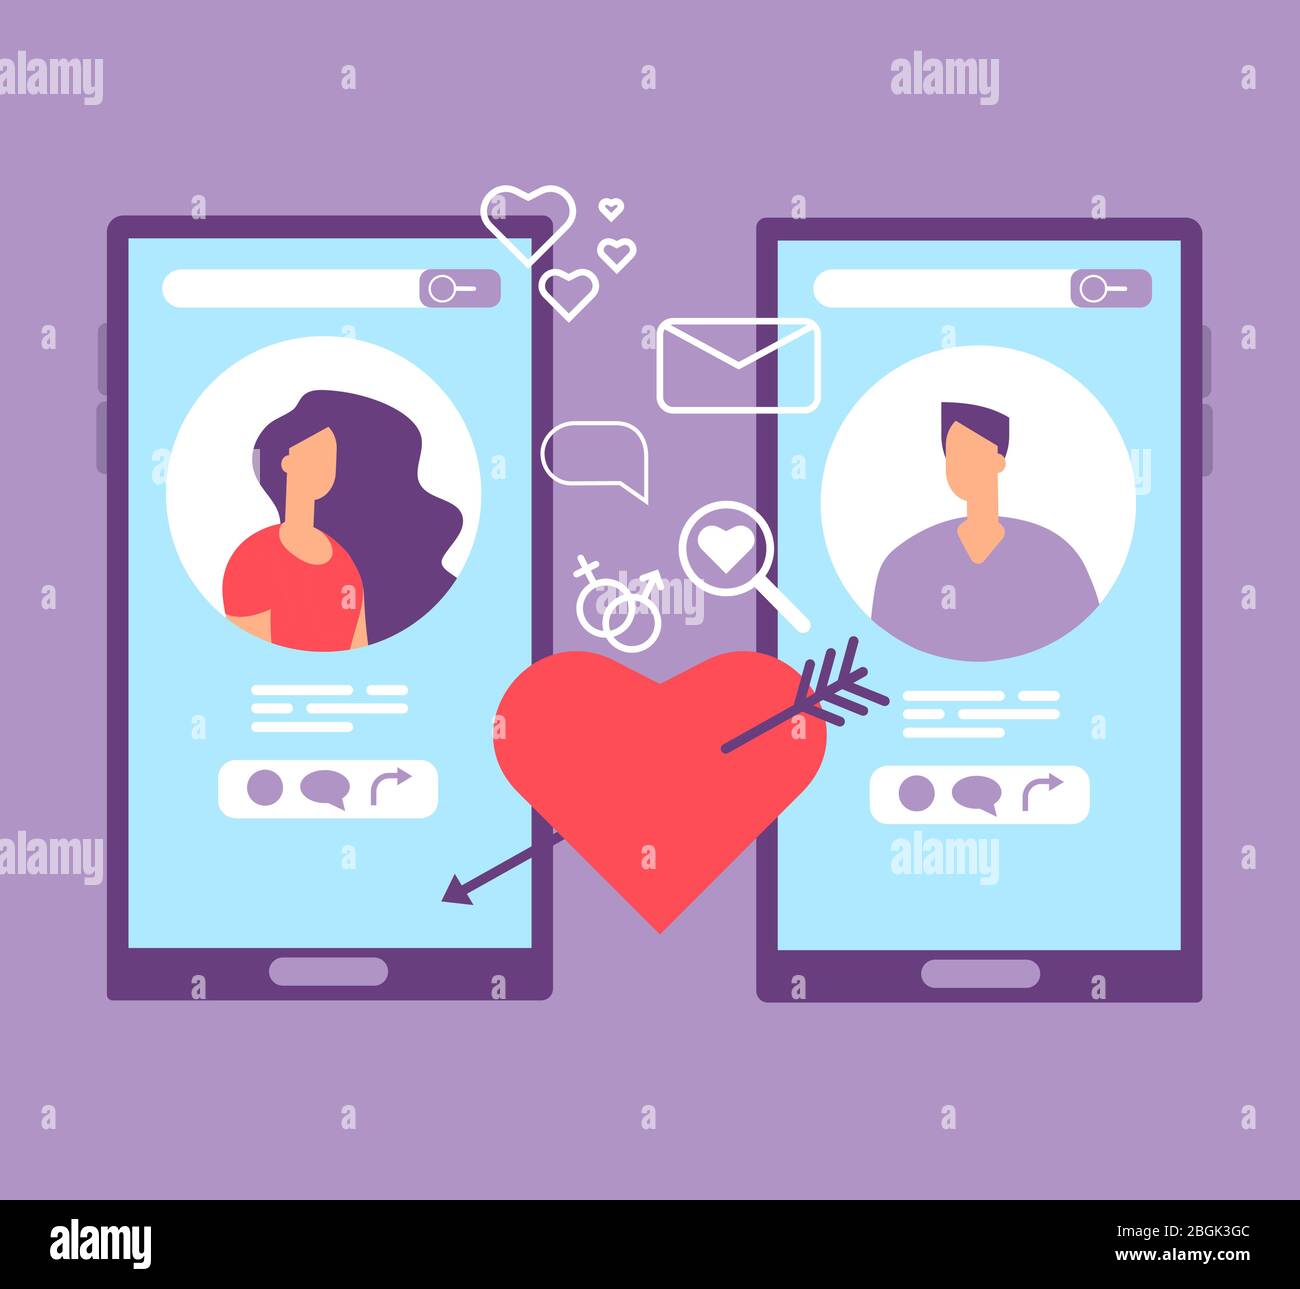 Romance dating online. Coppia amorevole sugli schermi dei telefoni cellulari. Concetto di vettore delle applicazioni di datazione. Illustrazione di dating online, amore di coppia in rete sociale Illustrazione Vettoriale